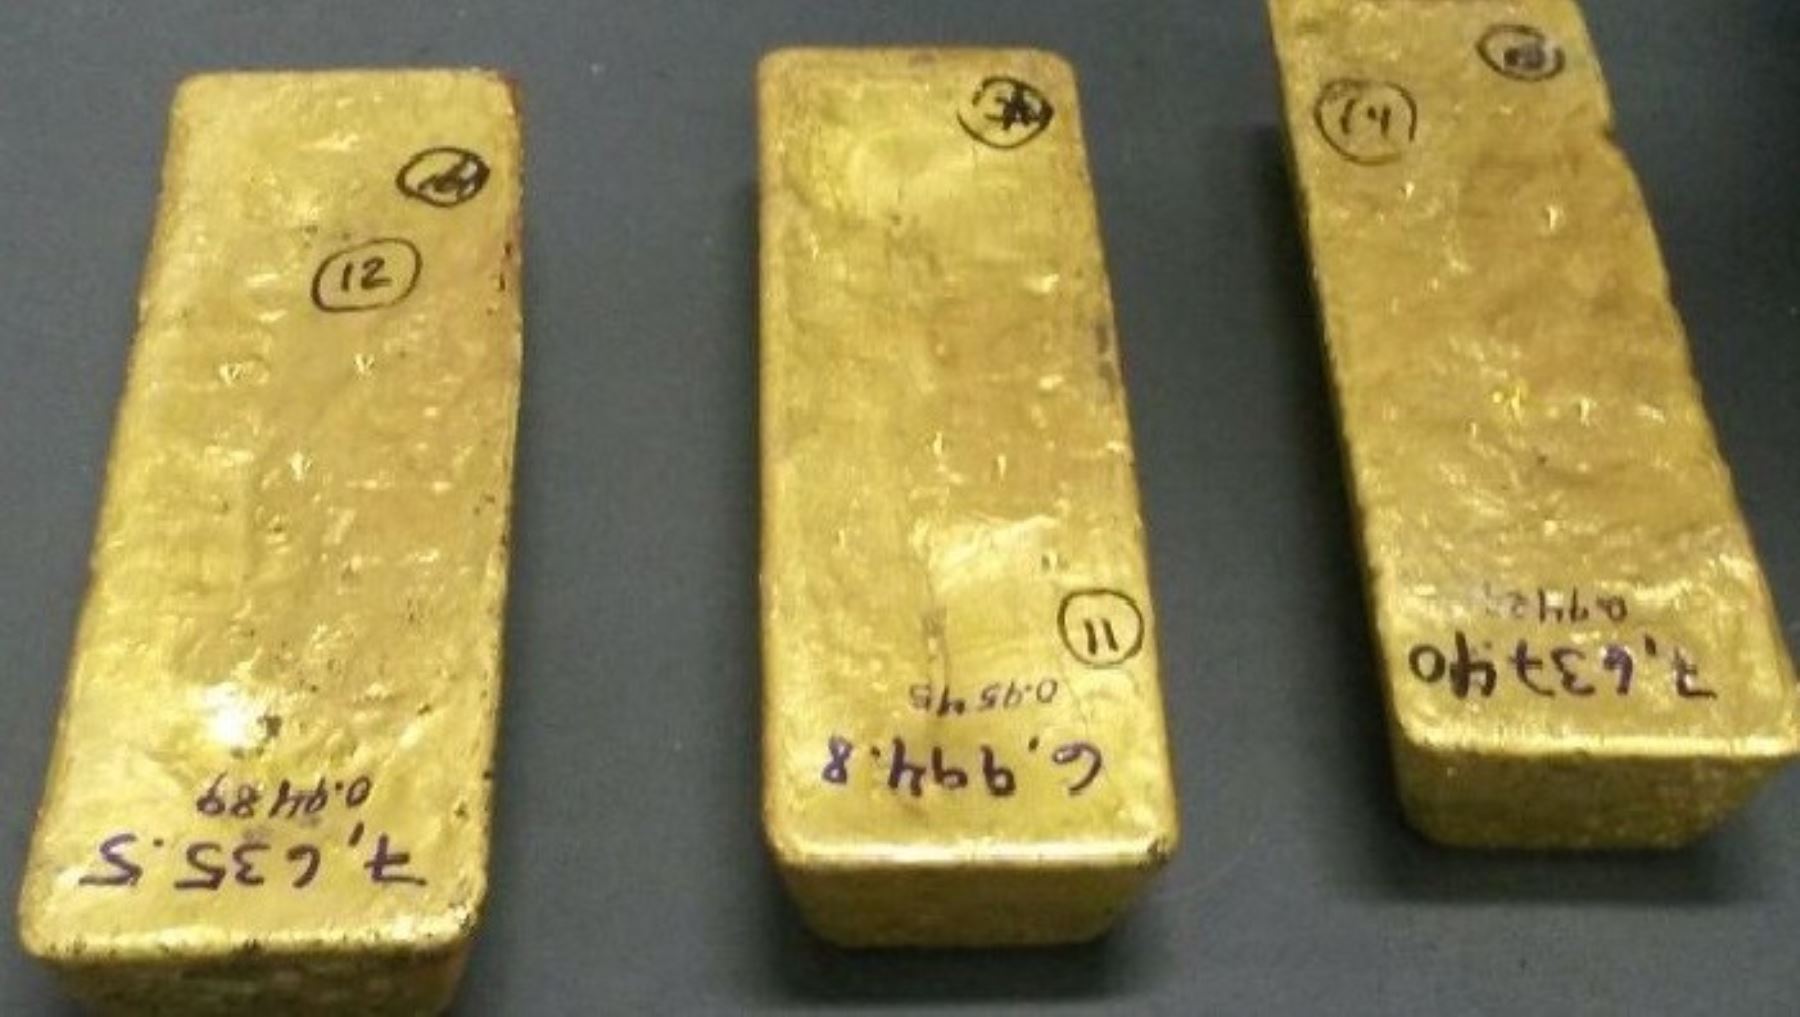 Conabi custodia lingotes de oro  decomisados a investigado por lavado de activos